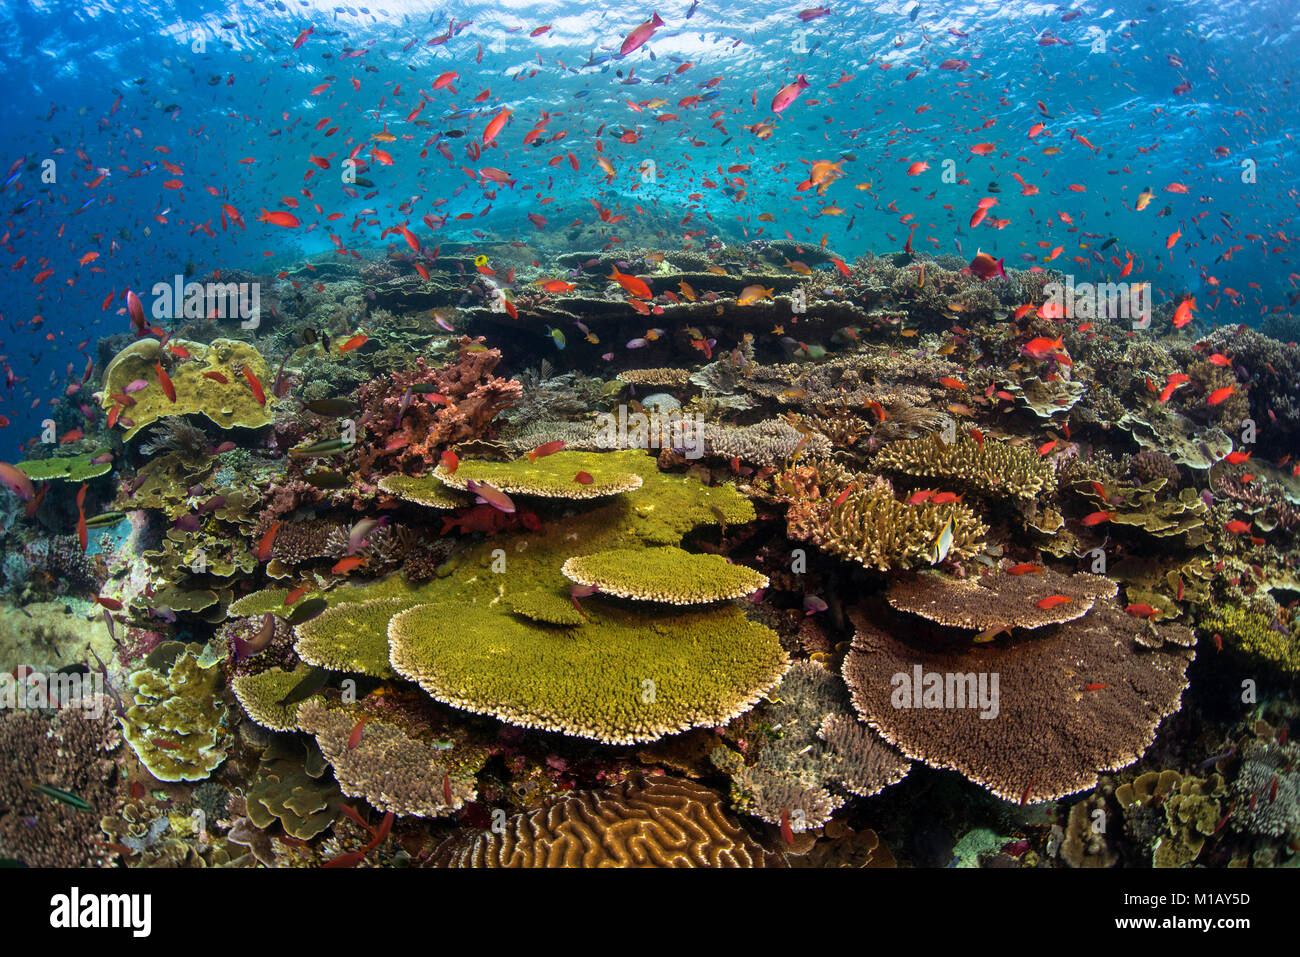 Hartkorallen auf einer unberührten Korallenriff mit hellen orange anthias Fisch oben, am berühmten Tauchplatz "Batu Bolong' im Komodo National Park, Indonesien Stockfoto